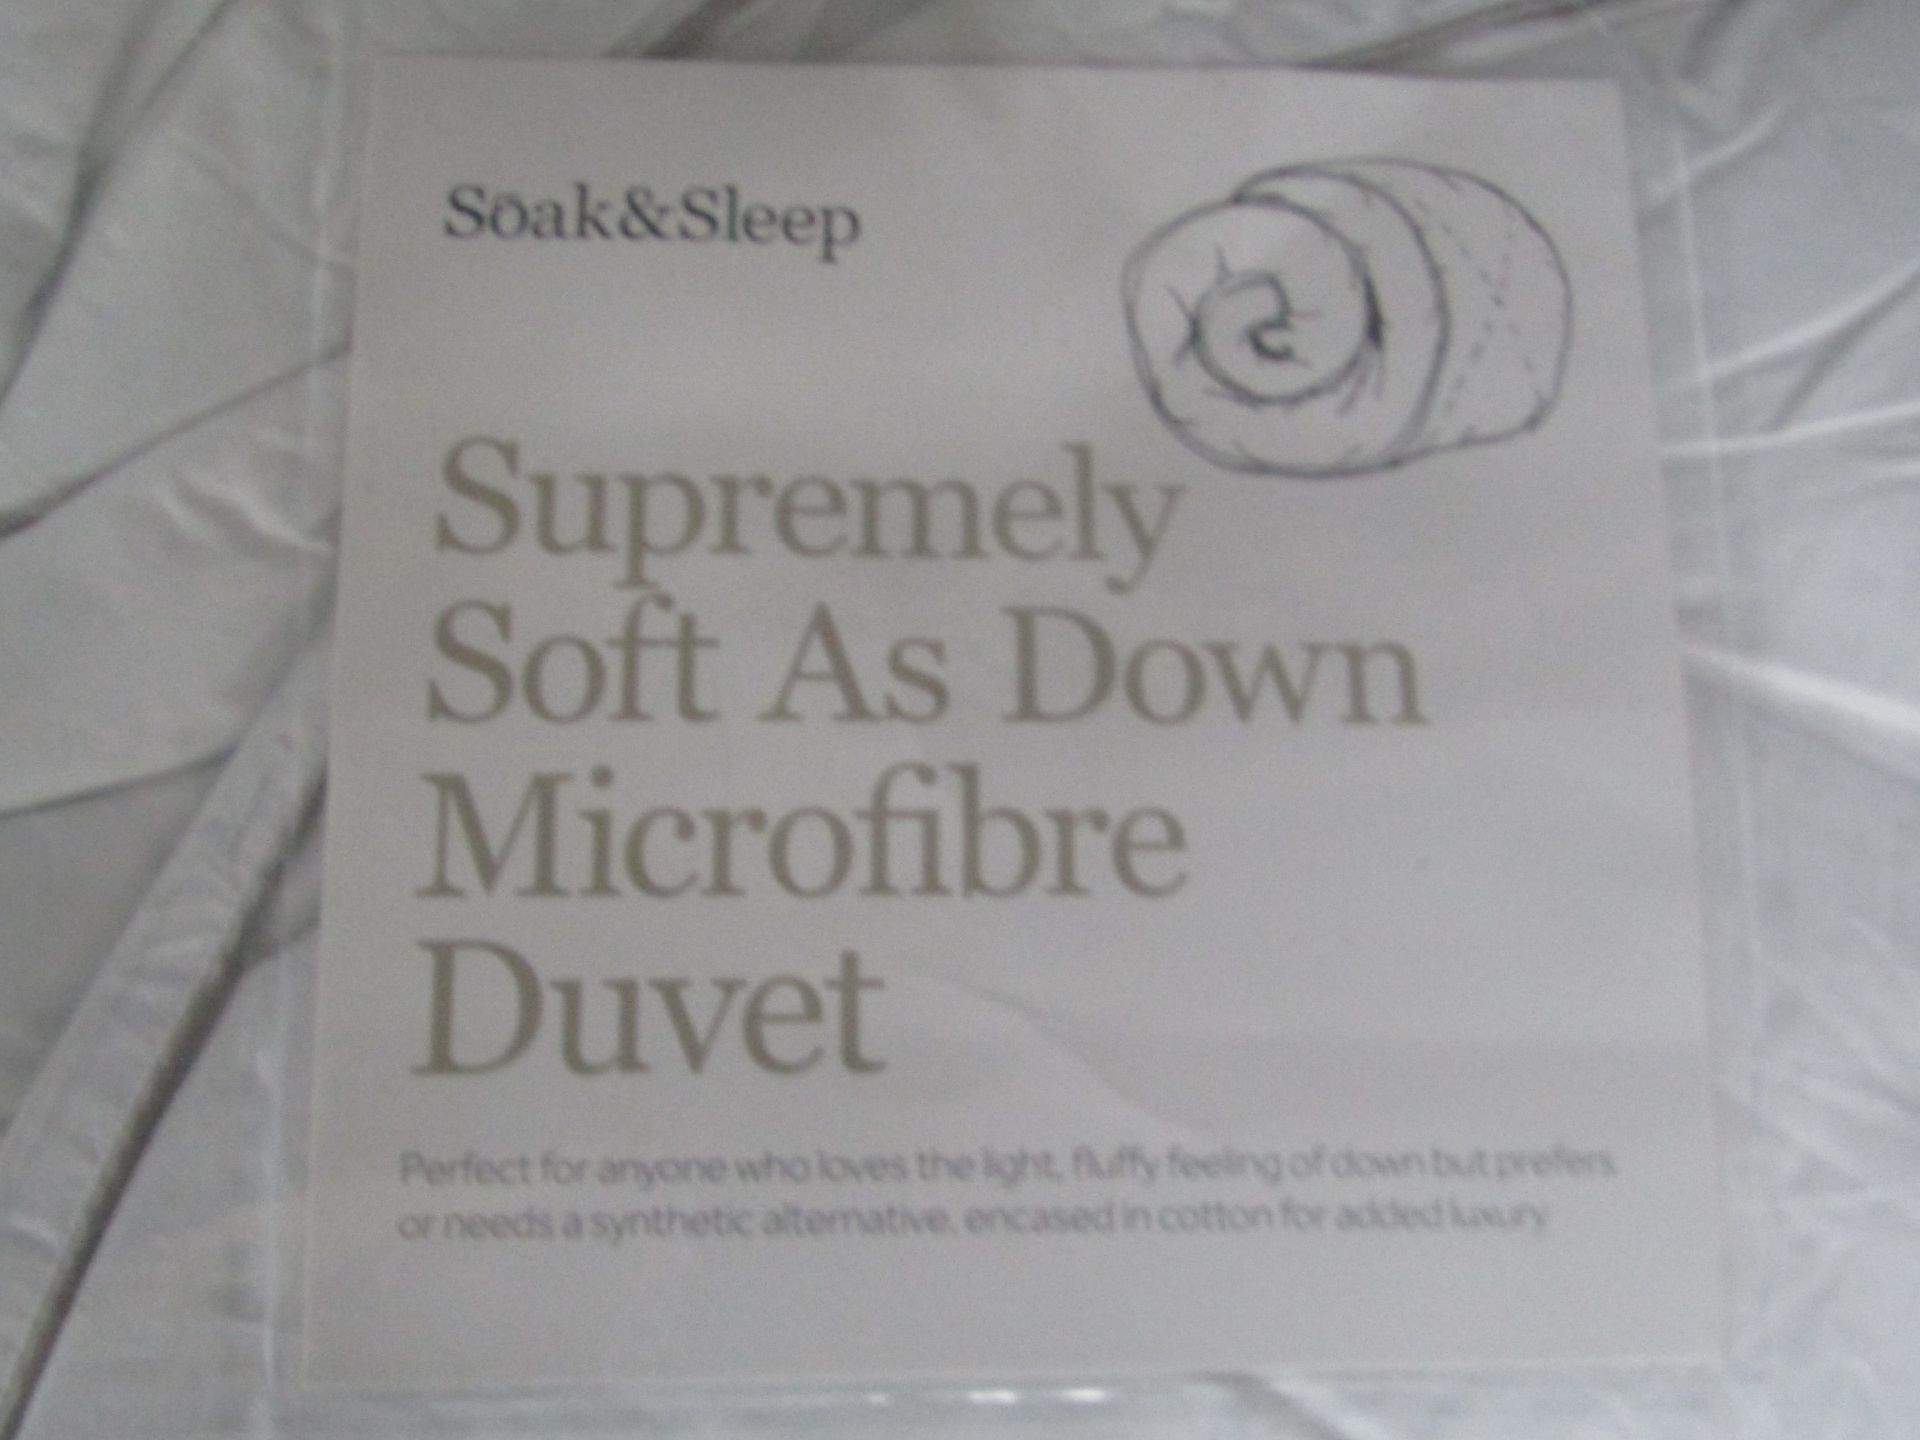 Soak & Sleep Soak & Sleep 10.5 Tog Soft As Down Microfibre Superking Duvet RRP 80 - Image 2 of 2